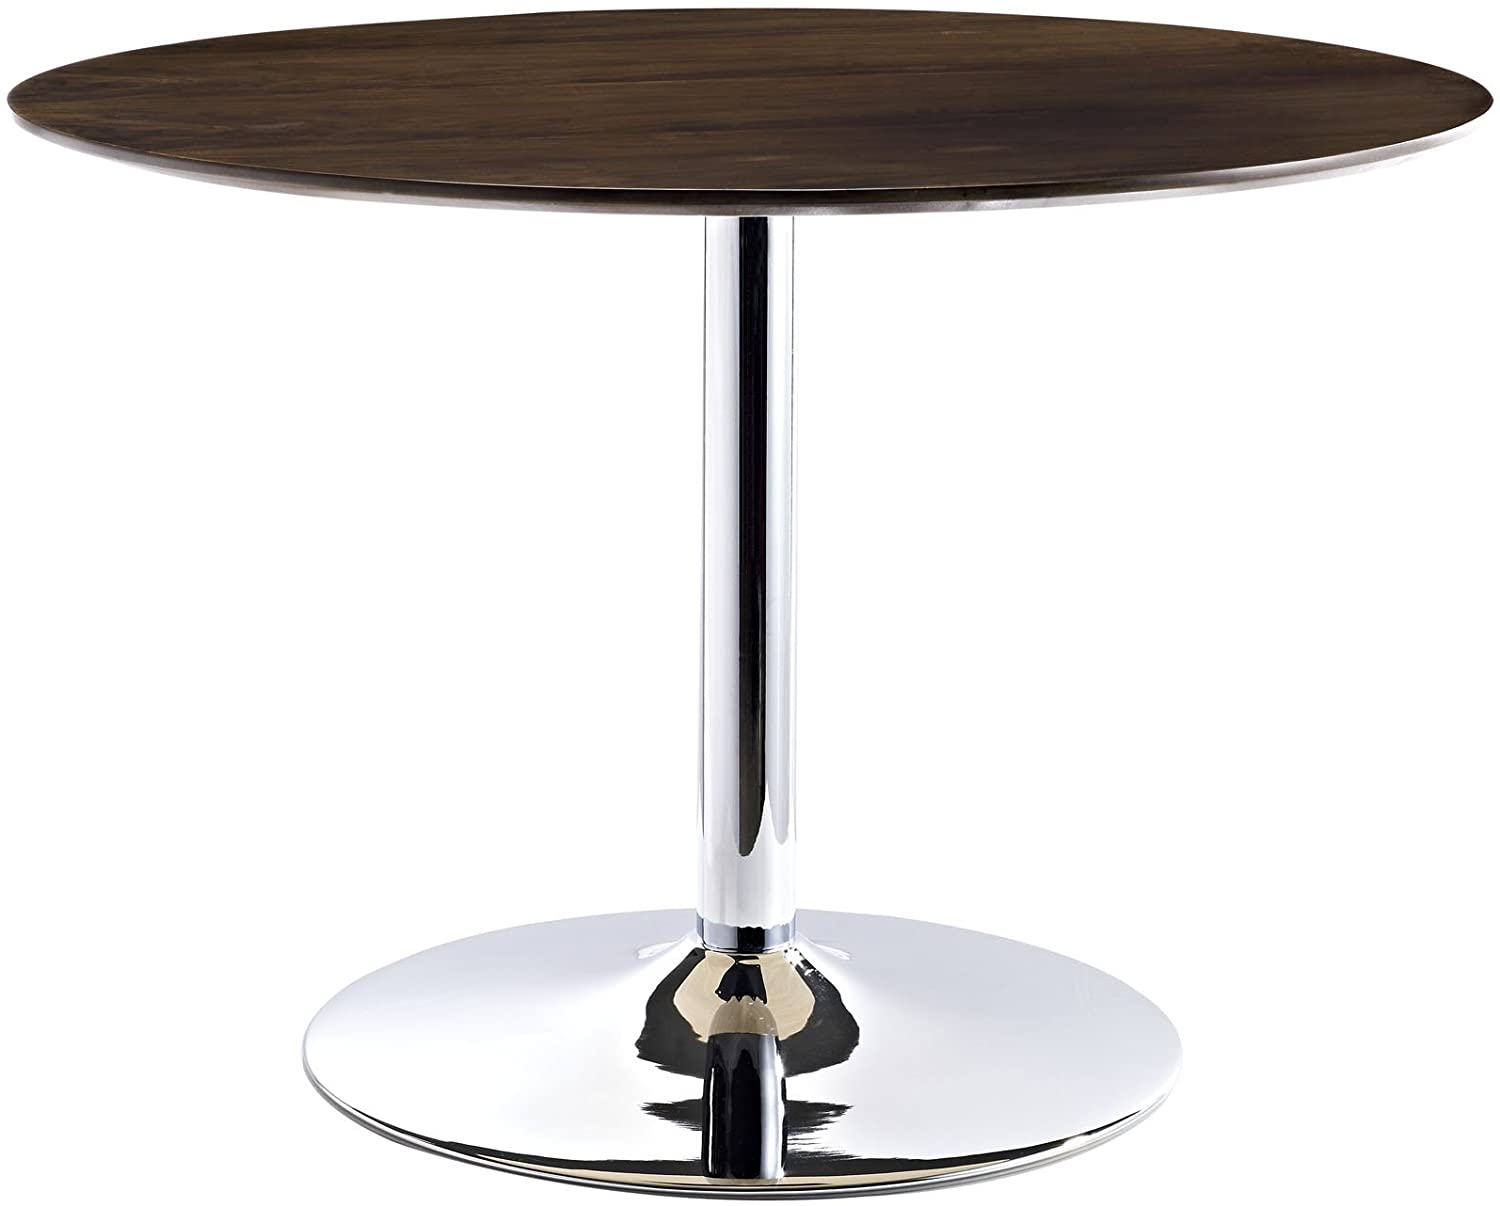 B007QUM9Y2 Modway Rostrum Modern 44" Round Top Pedestal Kitchen and Dining Room Table in Walnut